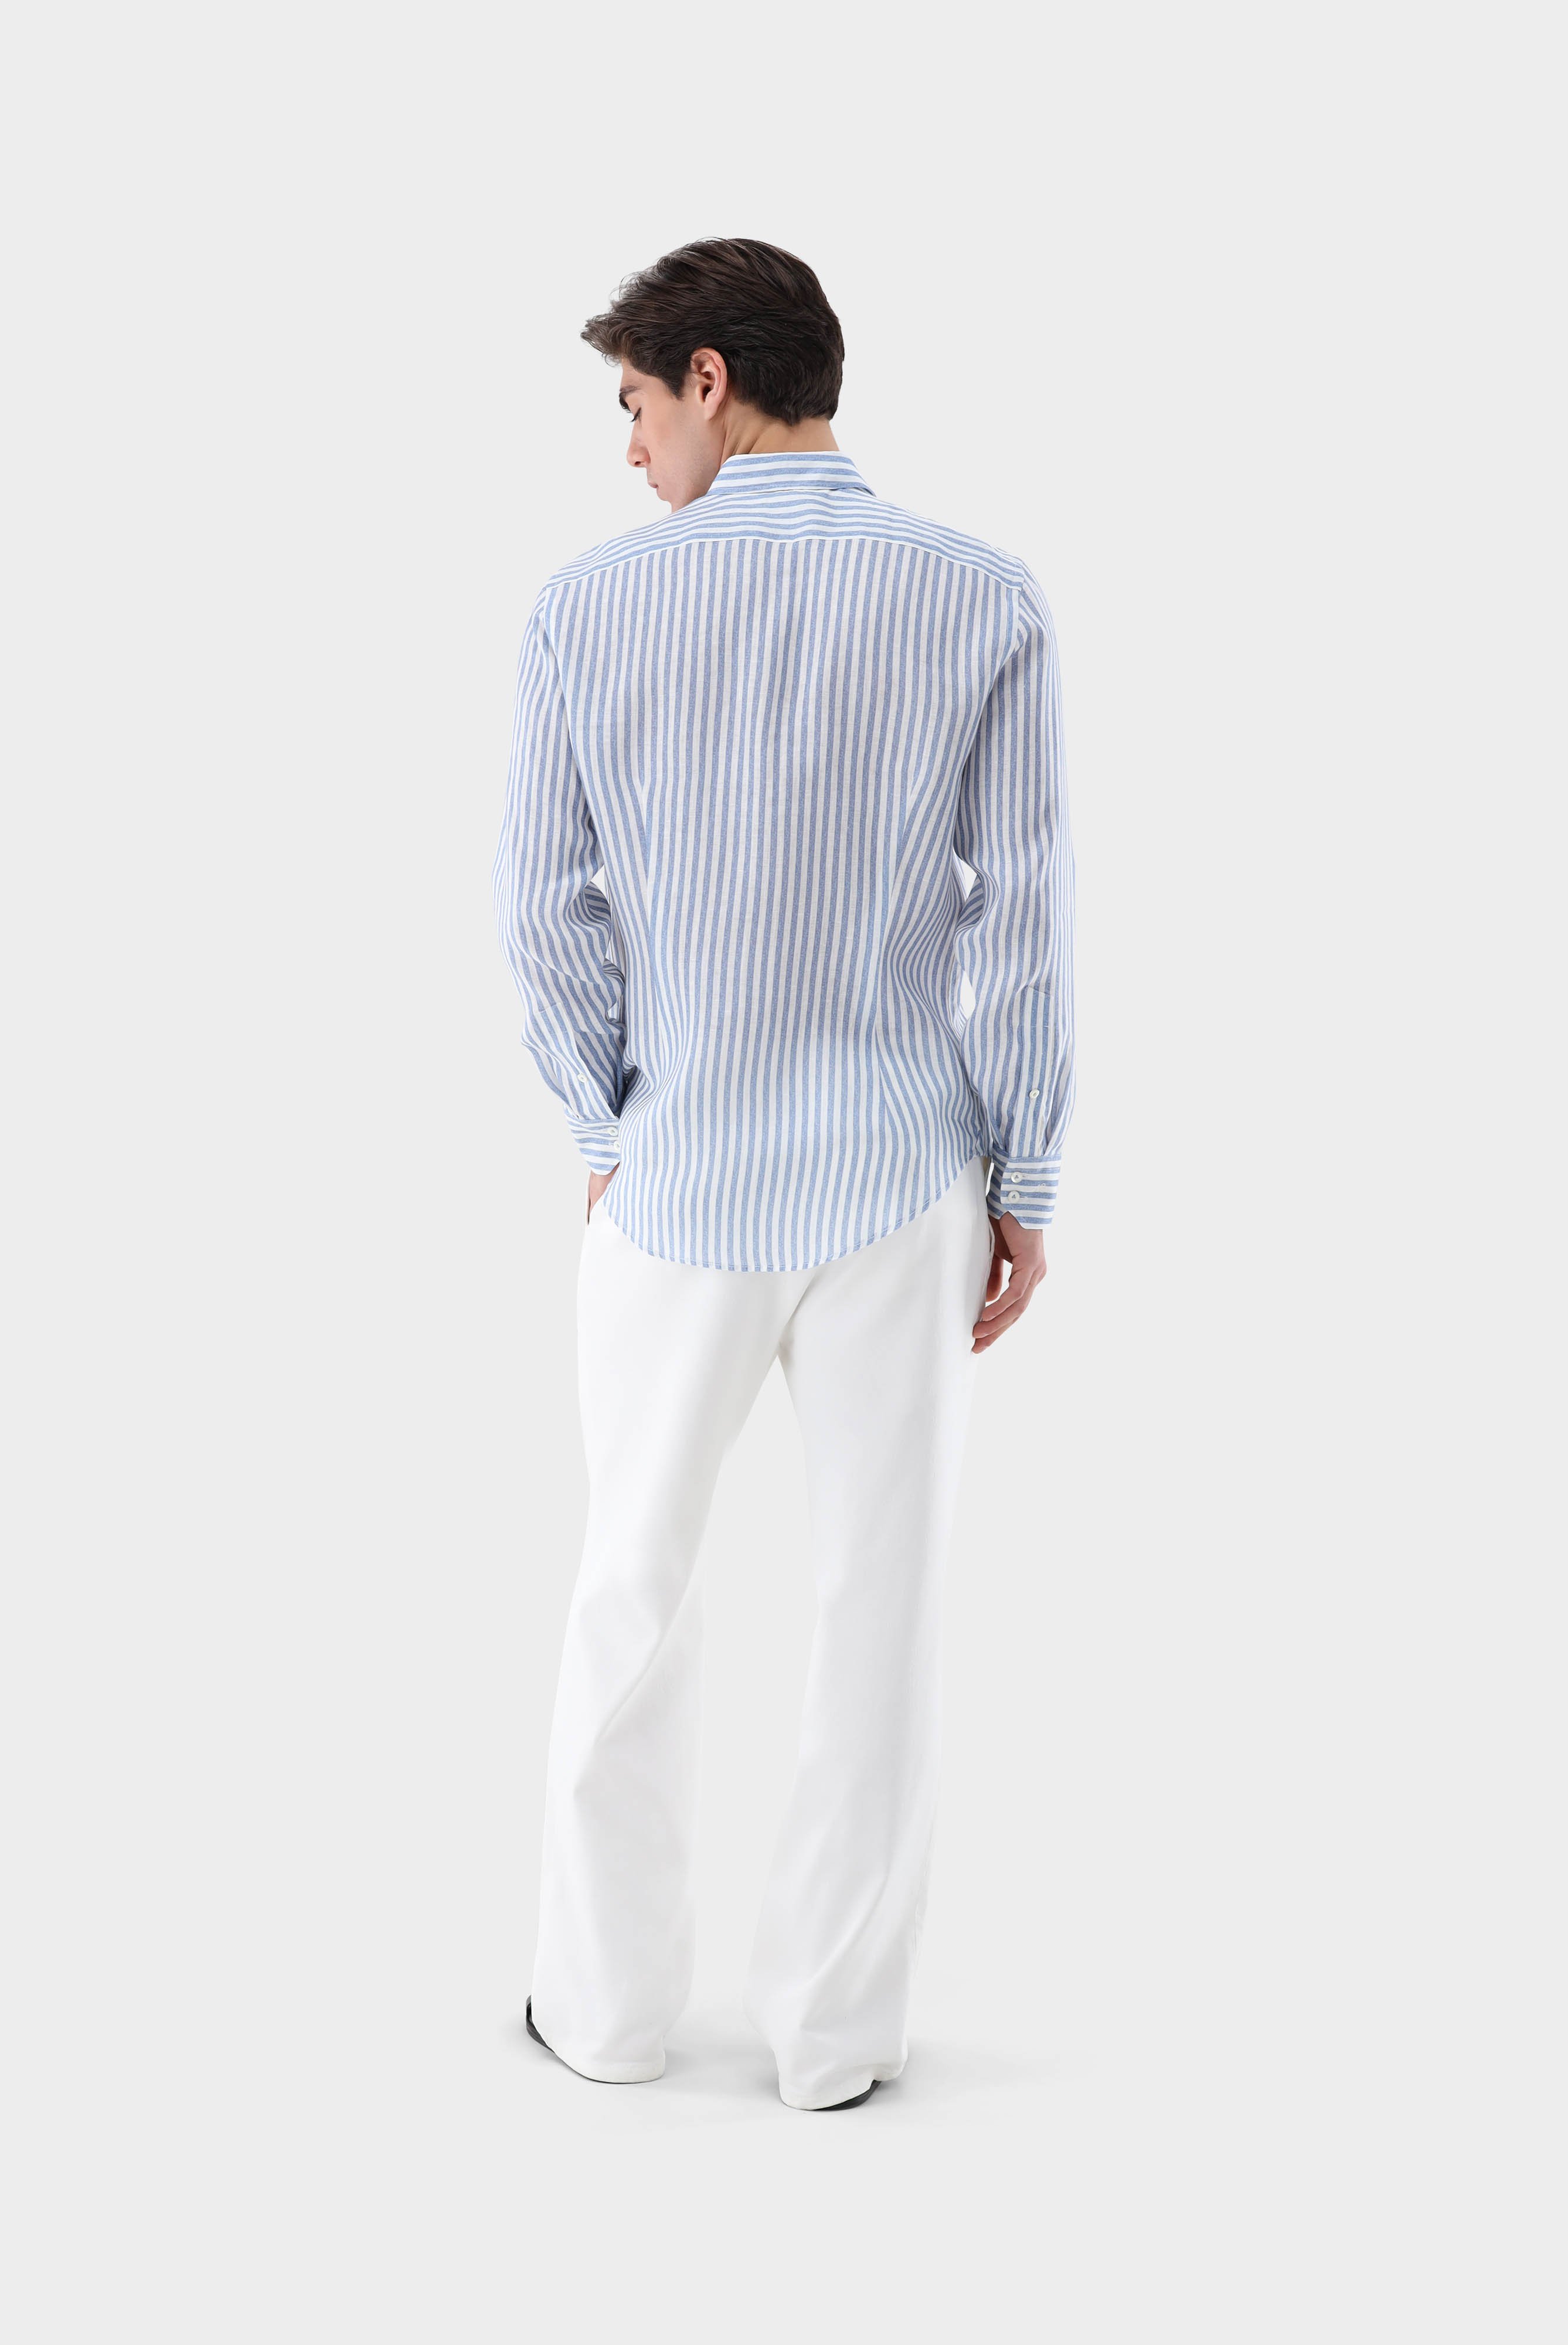 Casual Hemden+Leinenhemd mit Streifen-Druck Tailor Fit+20.2013.9V.170352.740.39